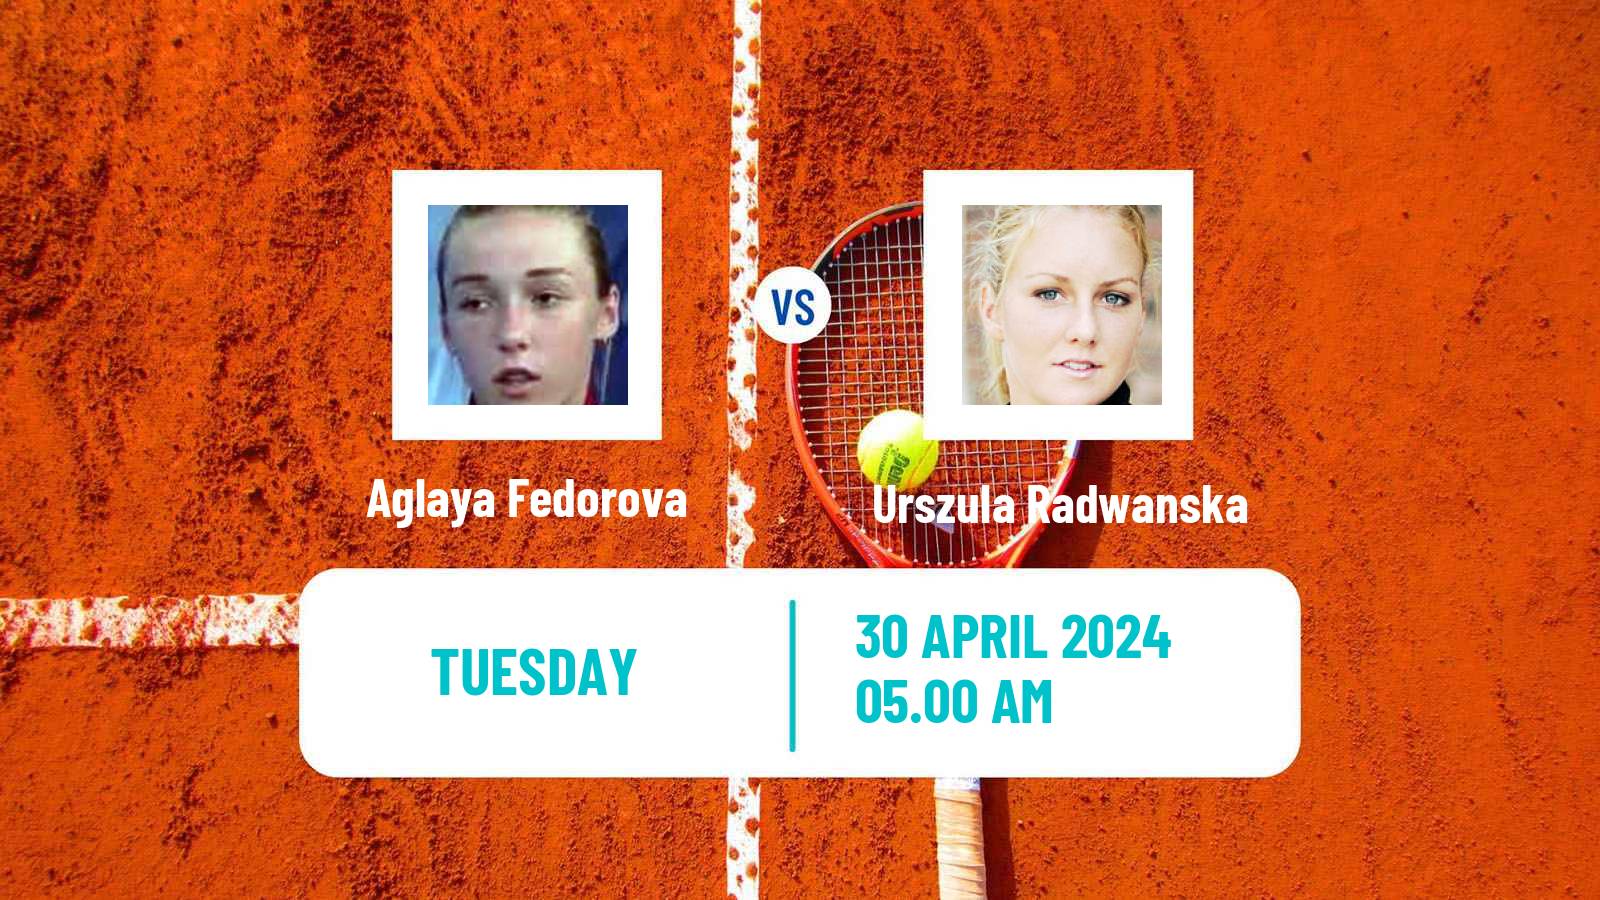 Tennis ITF W50 Lopota 2 Women Aglaya Fedorova - Urszula Radwanska